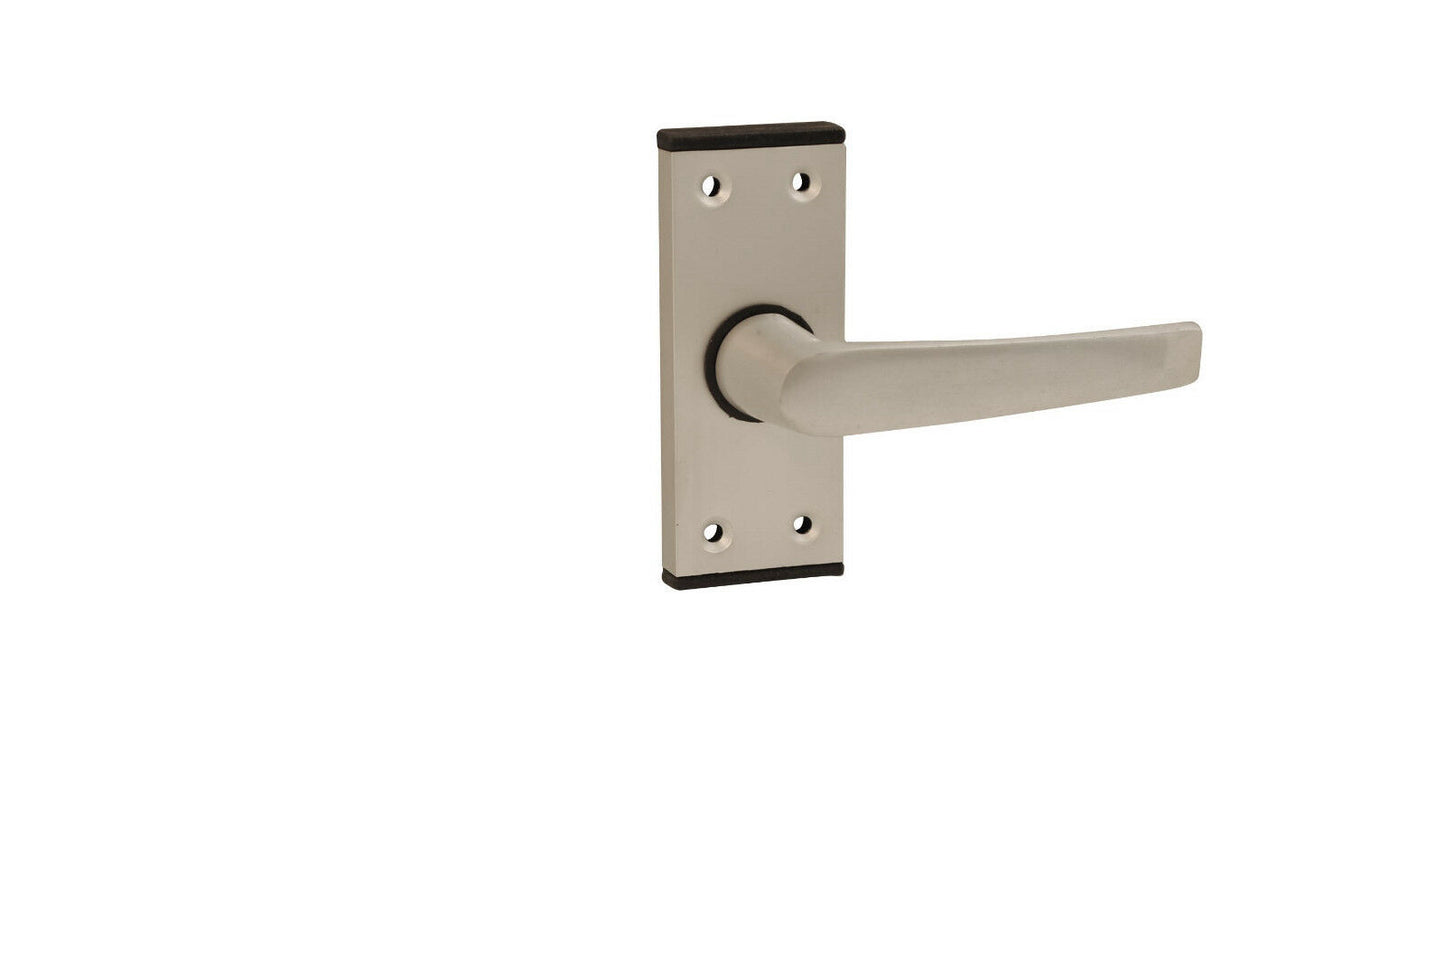 SAA Contract Aluminium Door Handle for Office/Industrial SAA Lever Latch | 8106